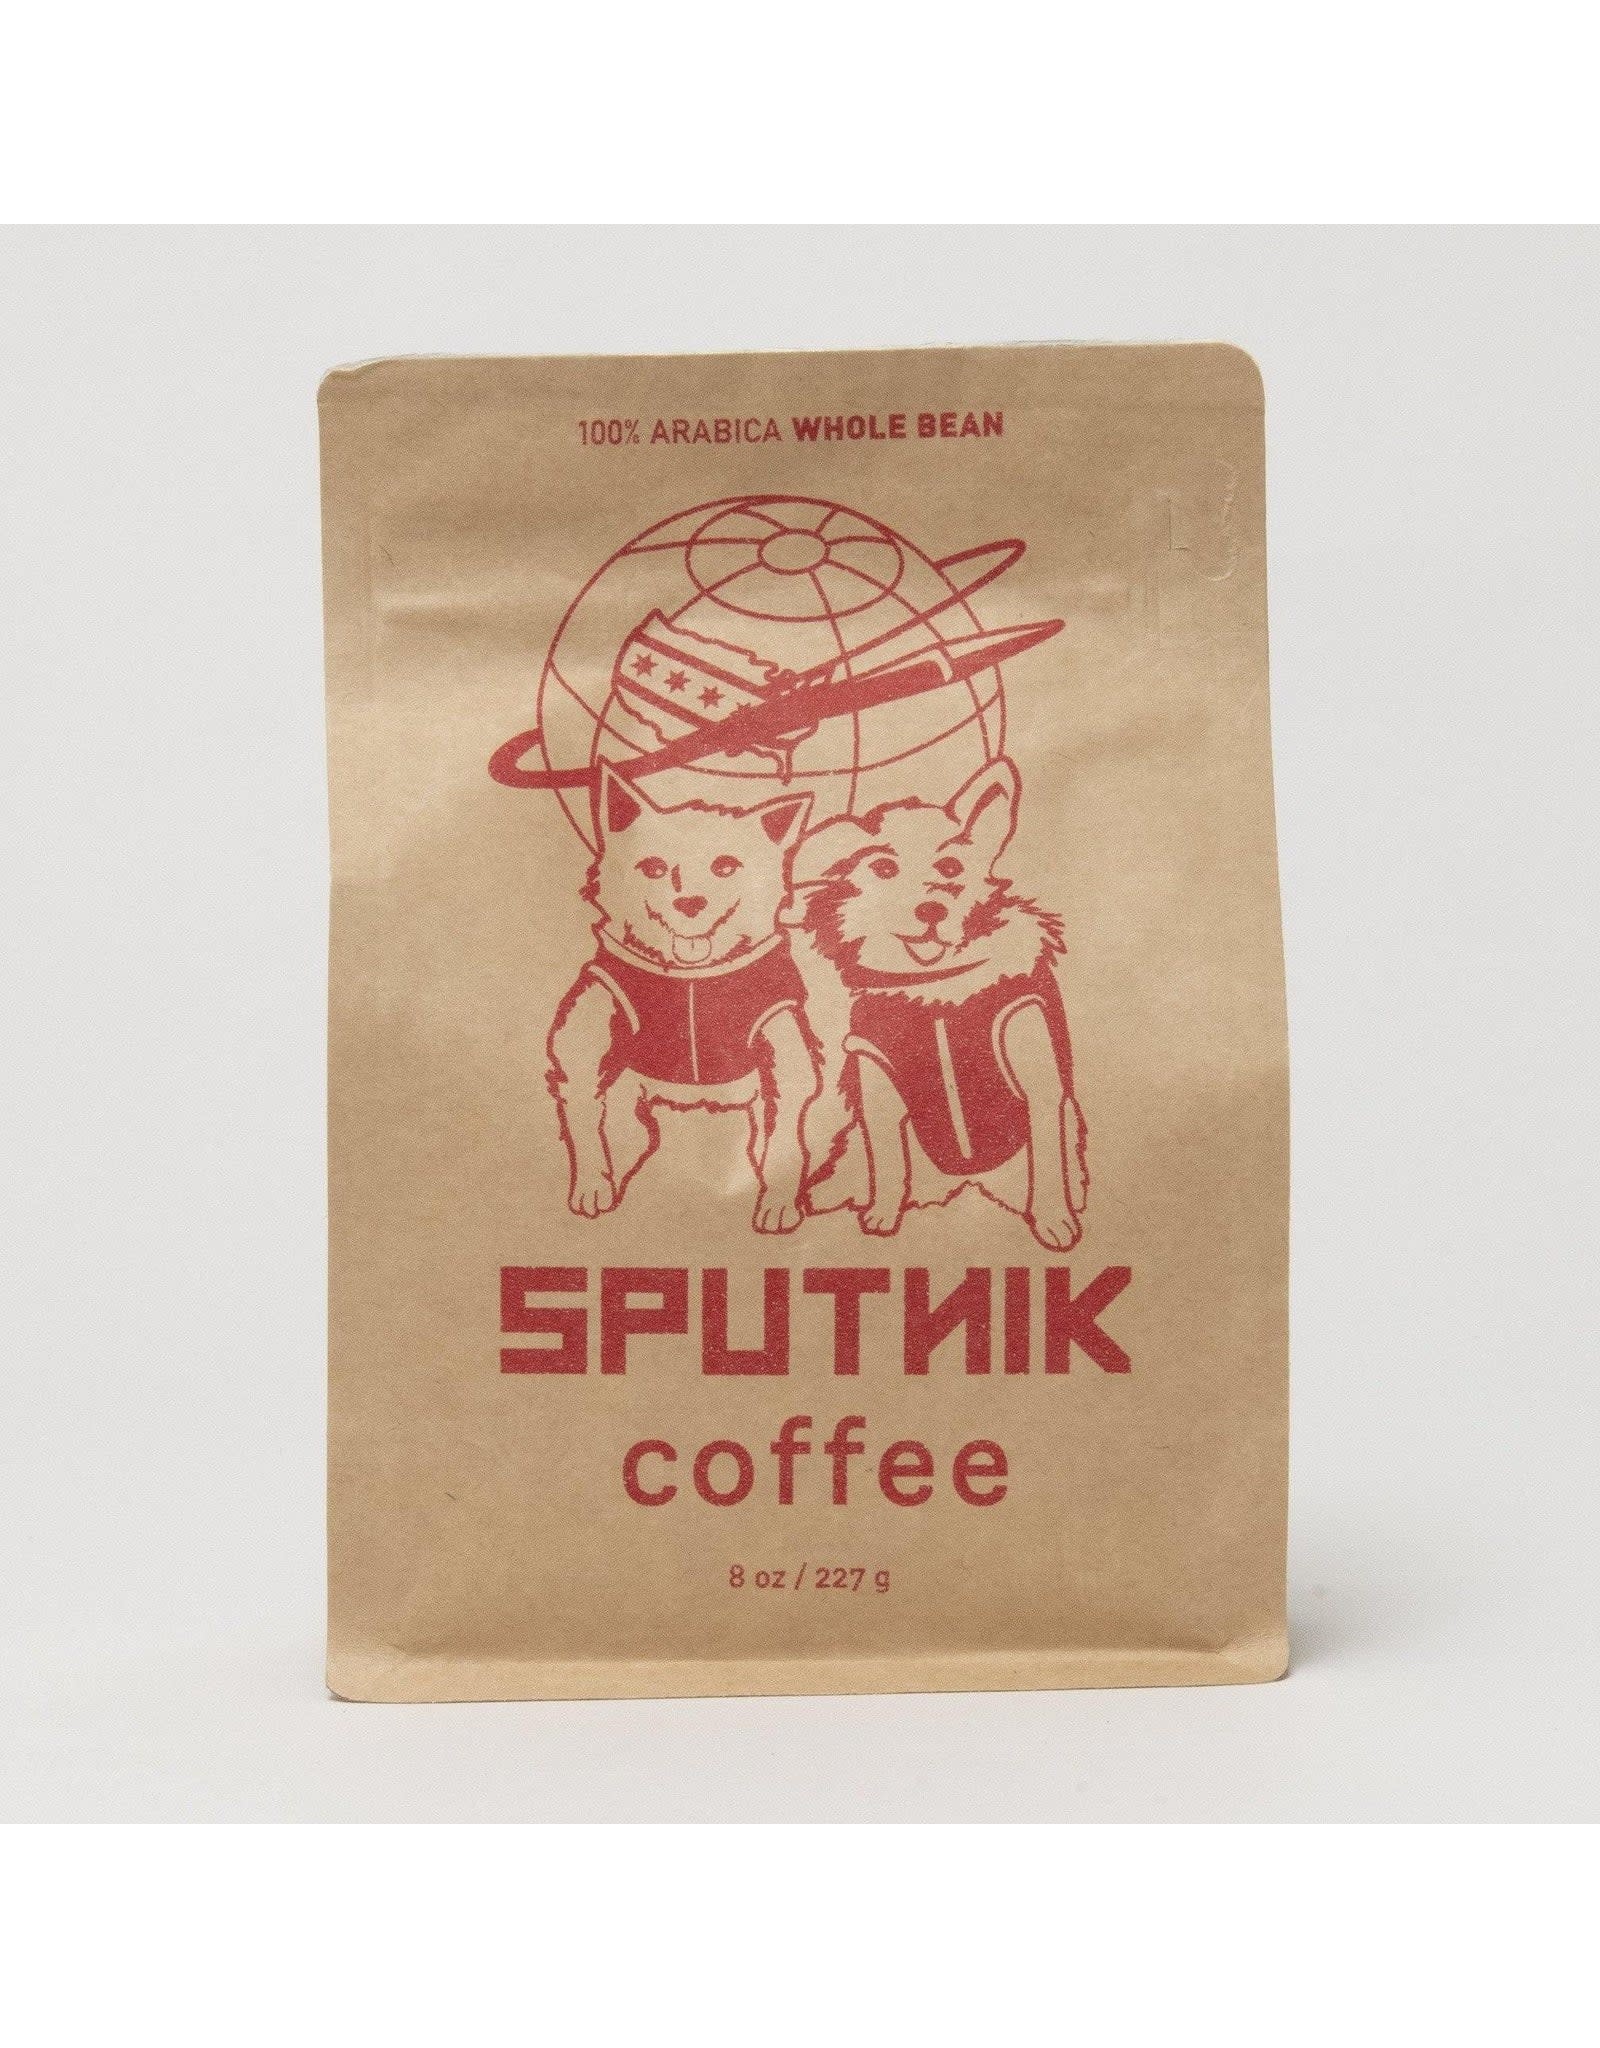 Sputnik Whole Bean Coffee